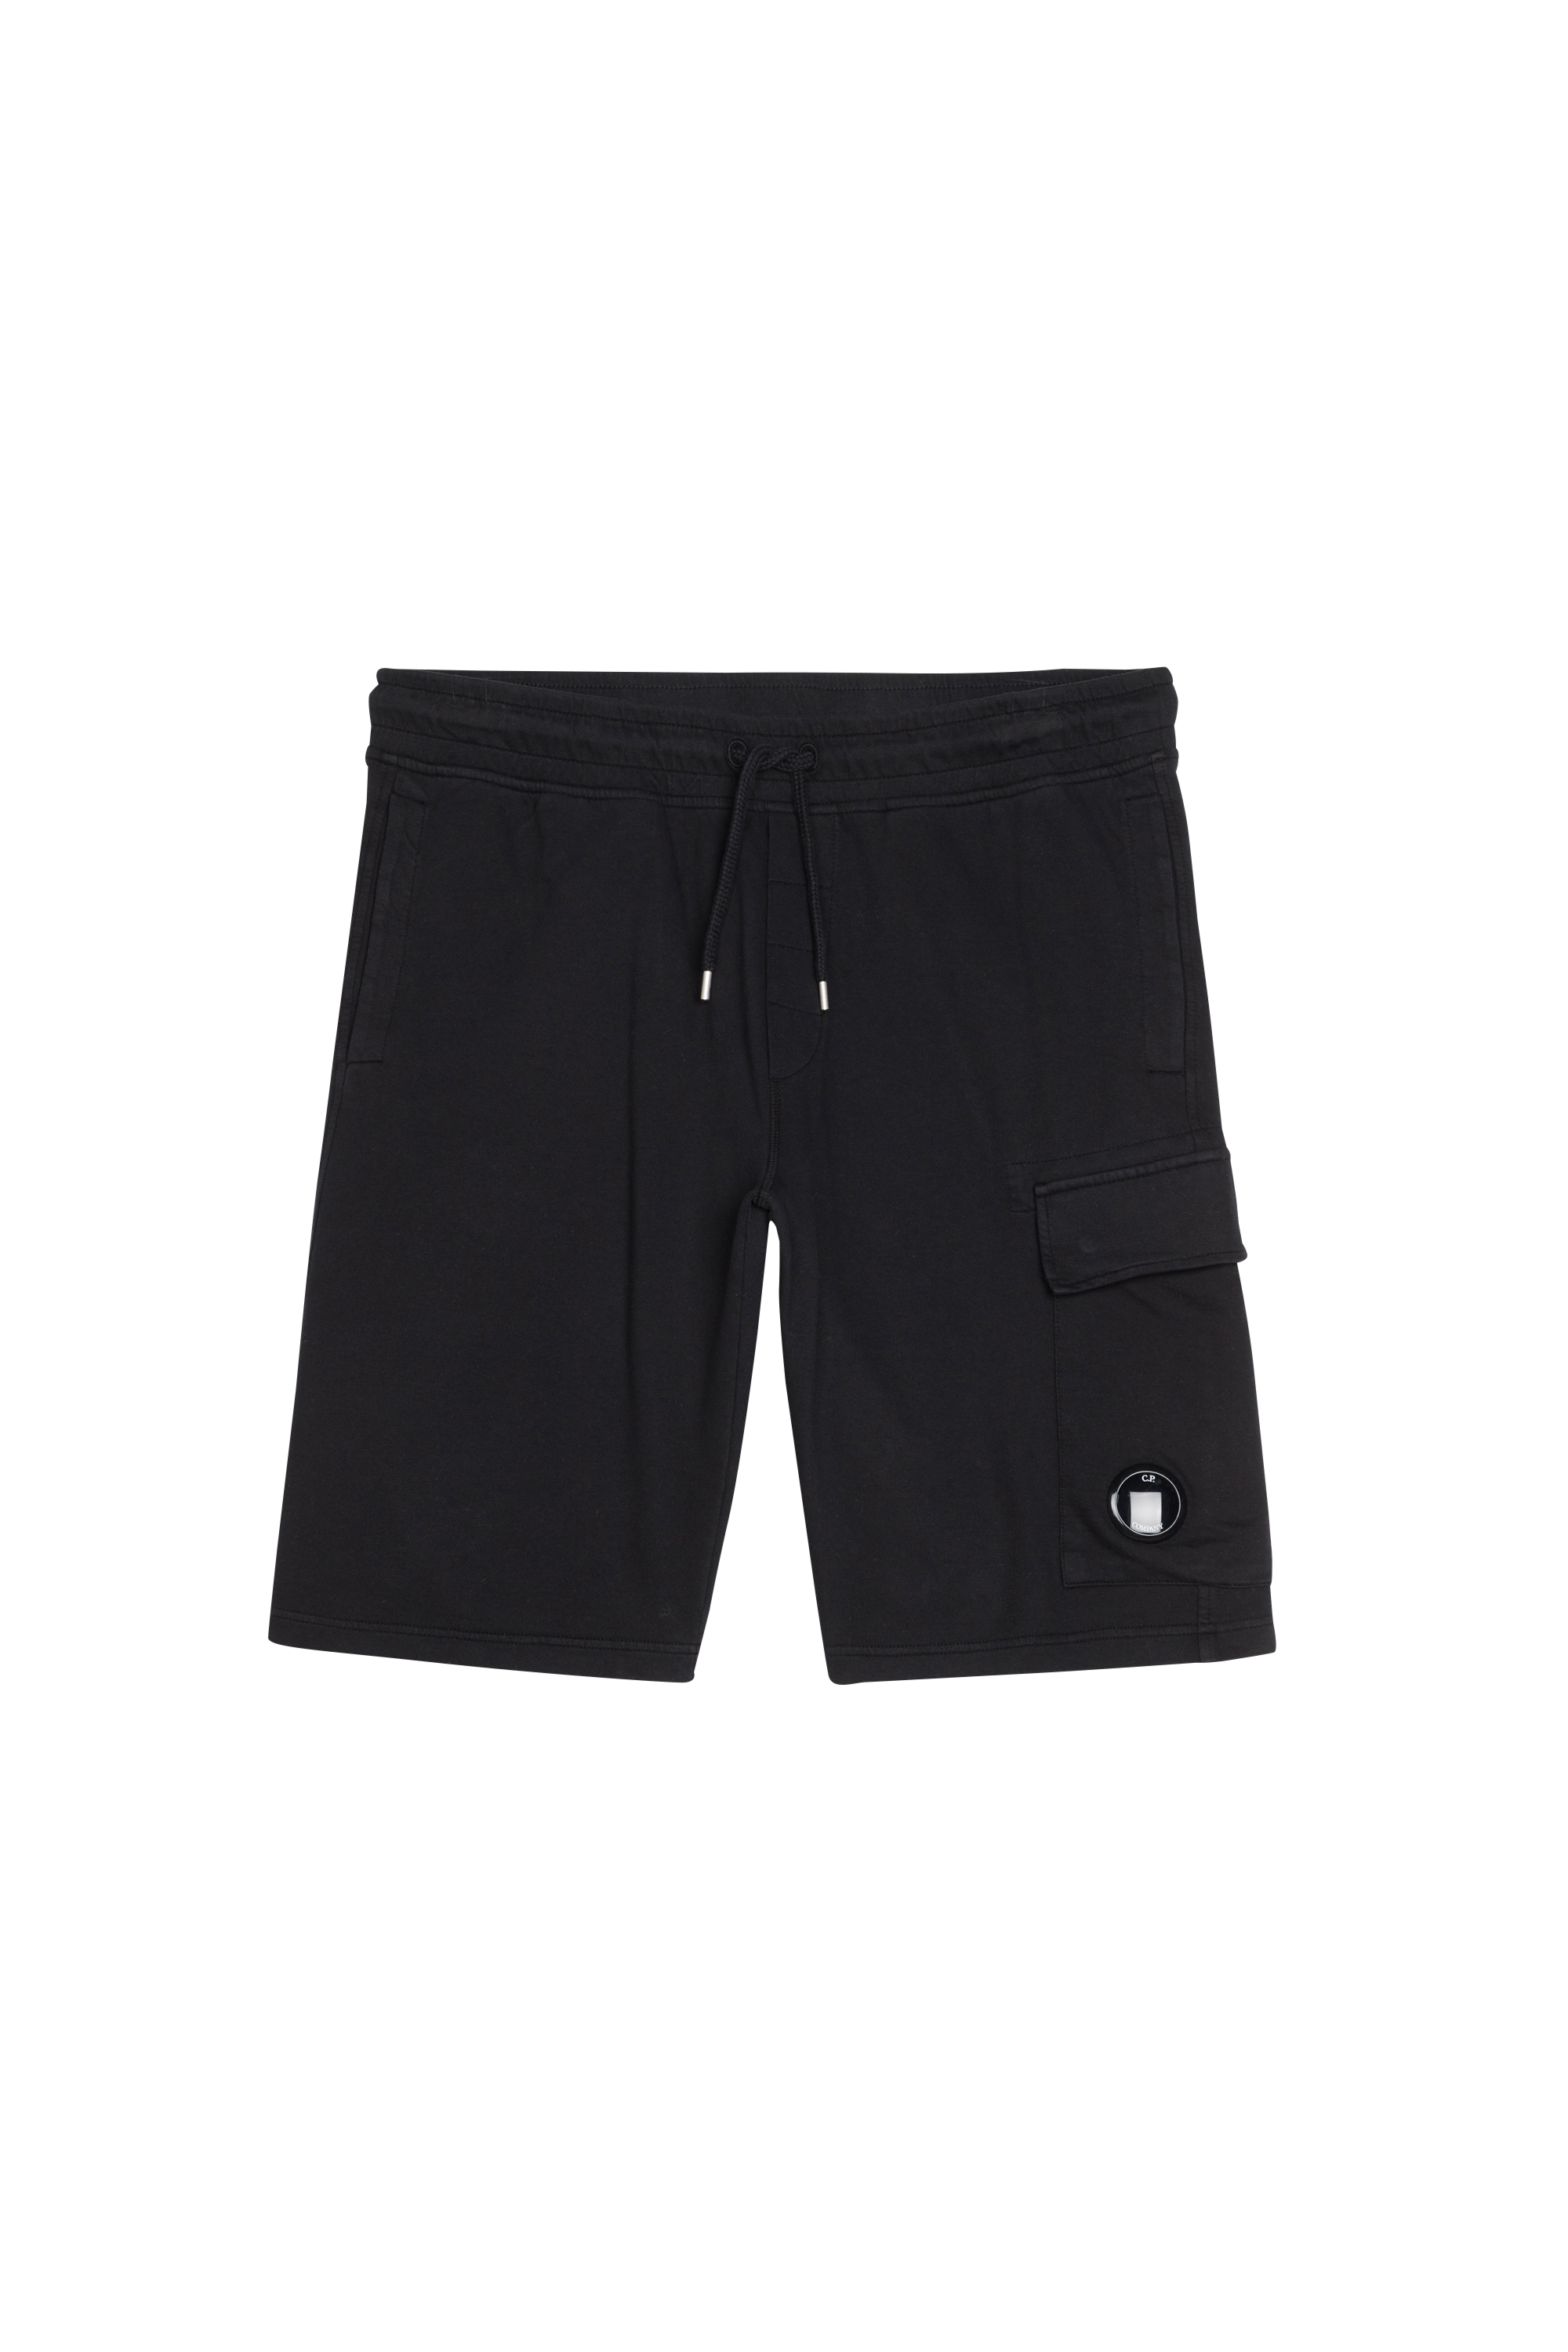 Homme Vêtements Shorts Shorts casual Short teint en plongée C.P Company pour homme en coloris Noir 